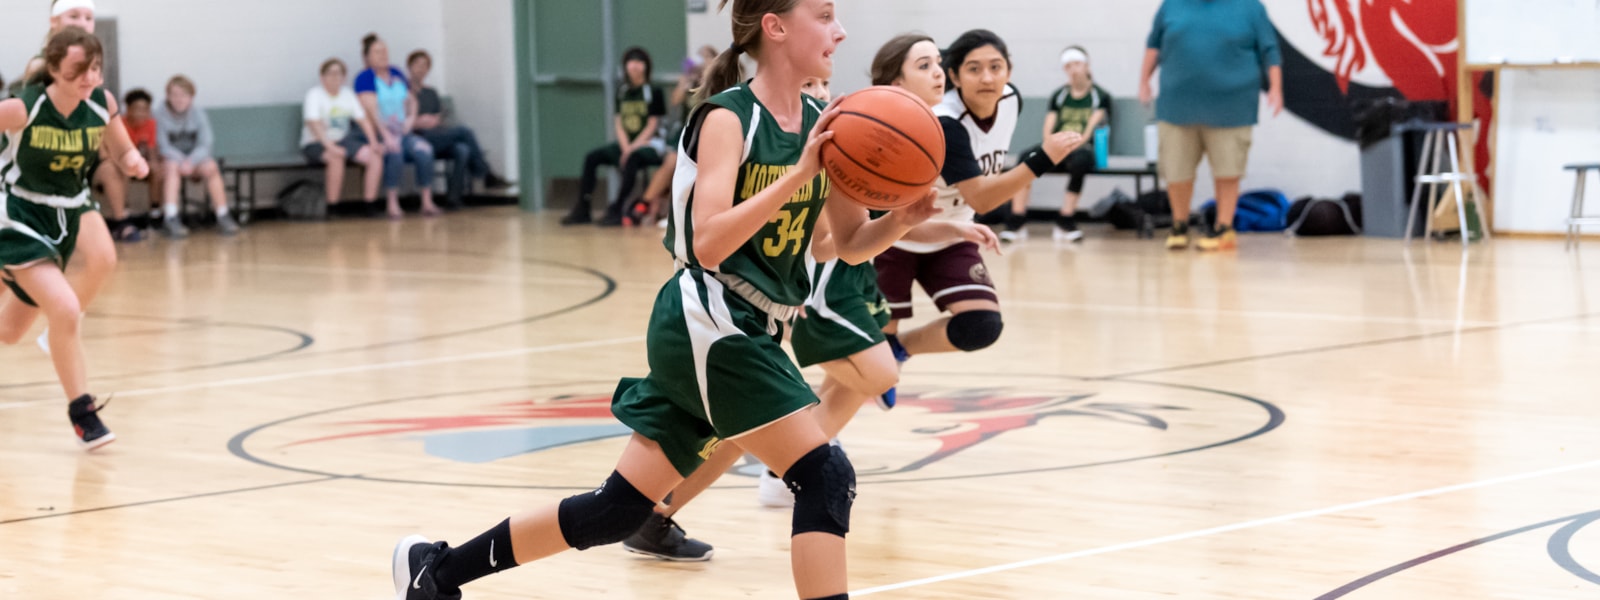 Girl dribbling basketball